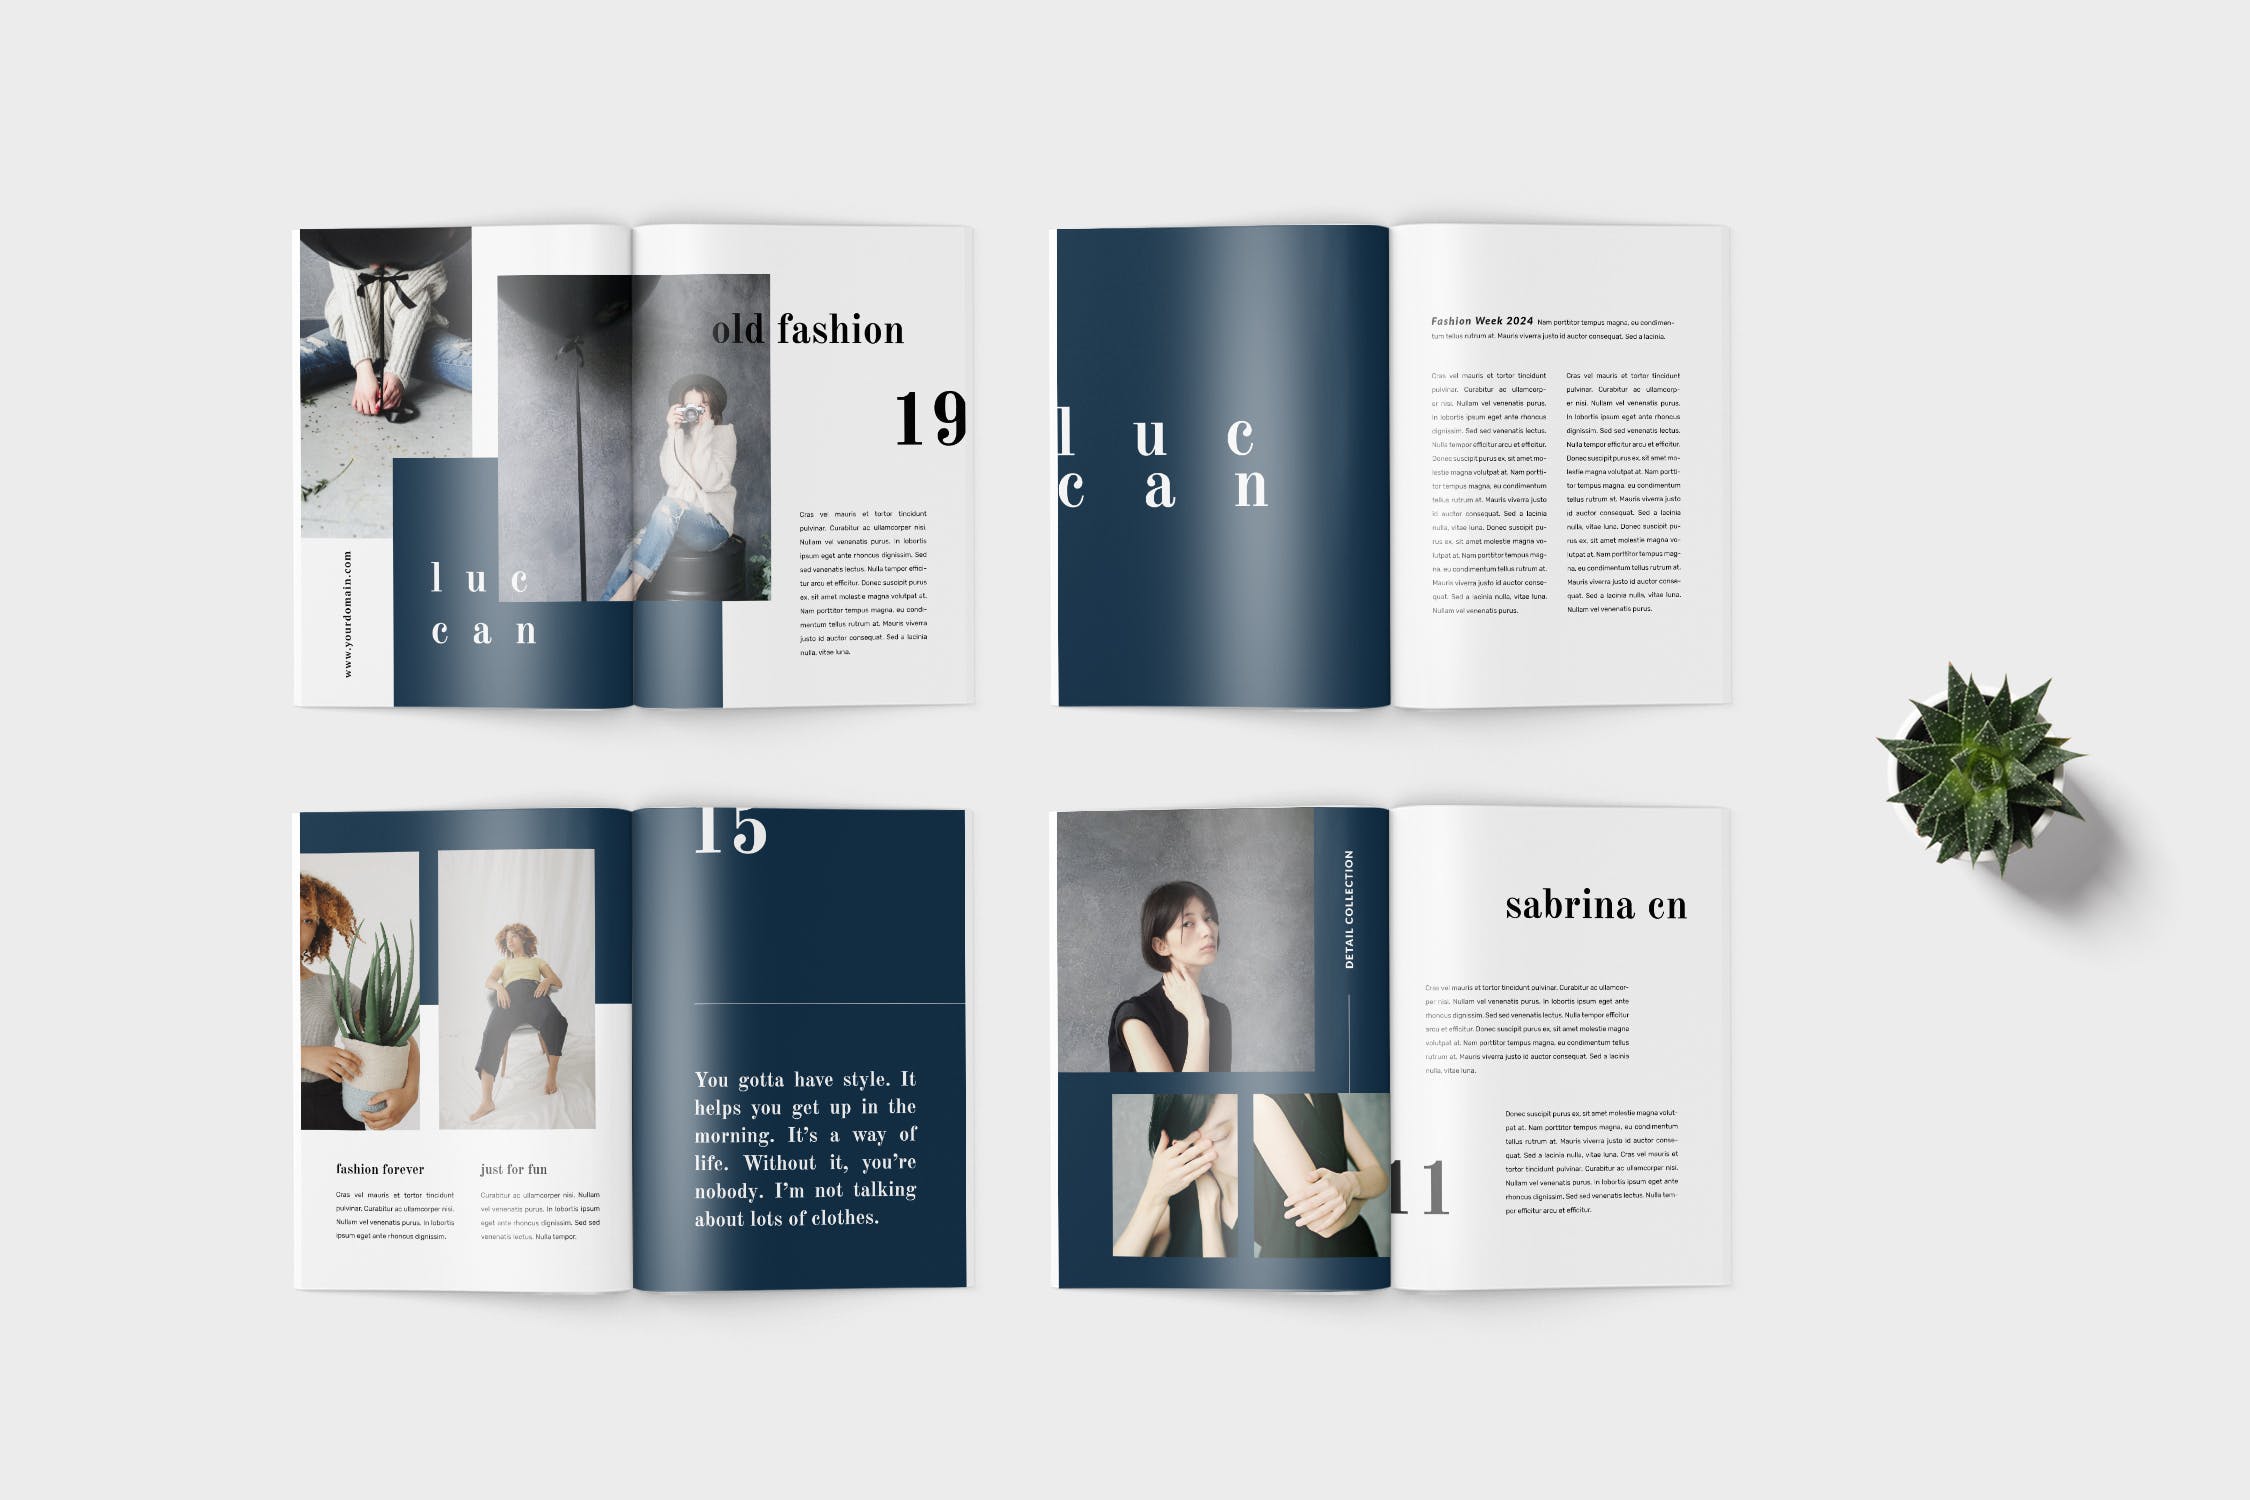 高端女性服装品牌产品非凡图库精选目录设计模板 Luccan Fashion Lookbook Catalogue插图(3)